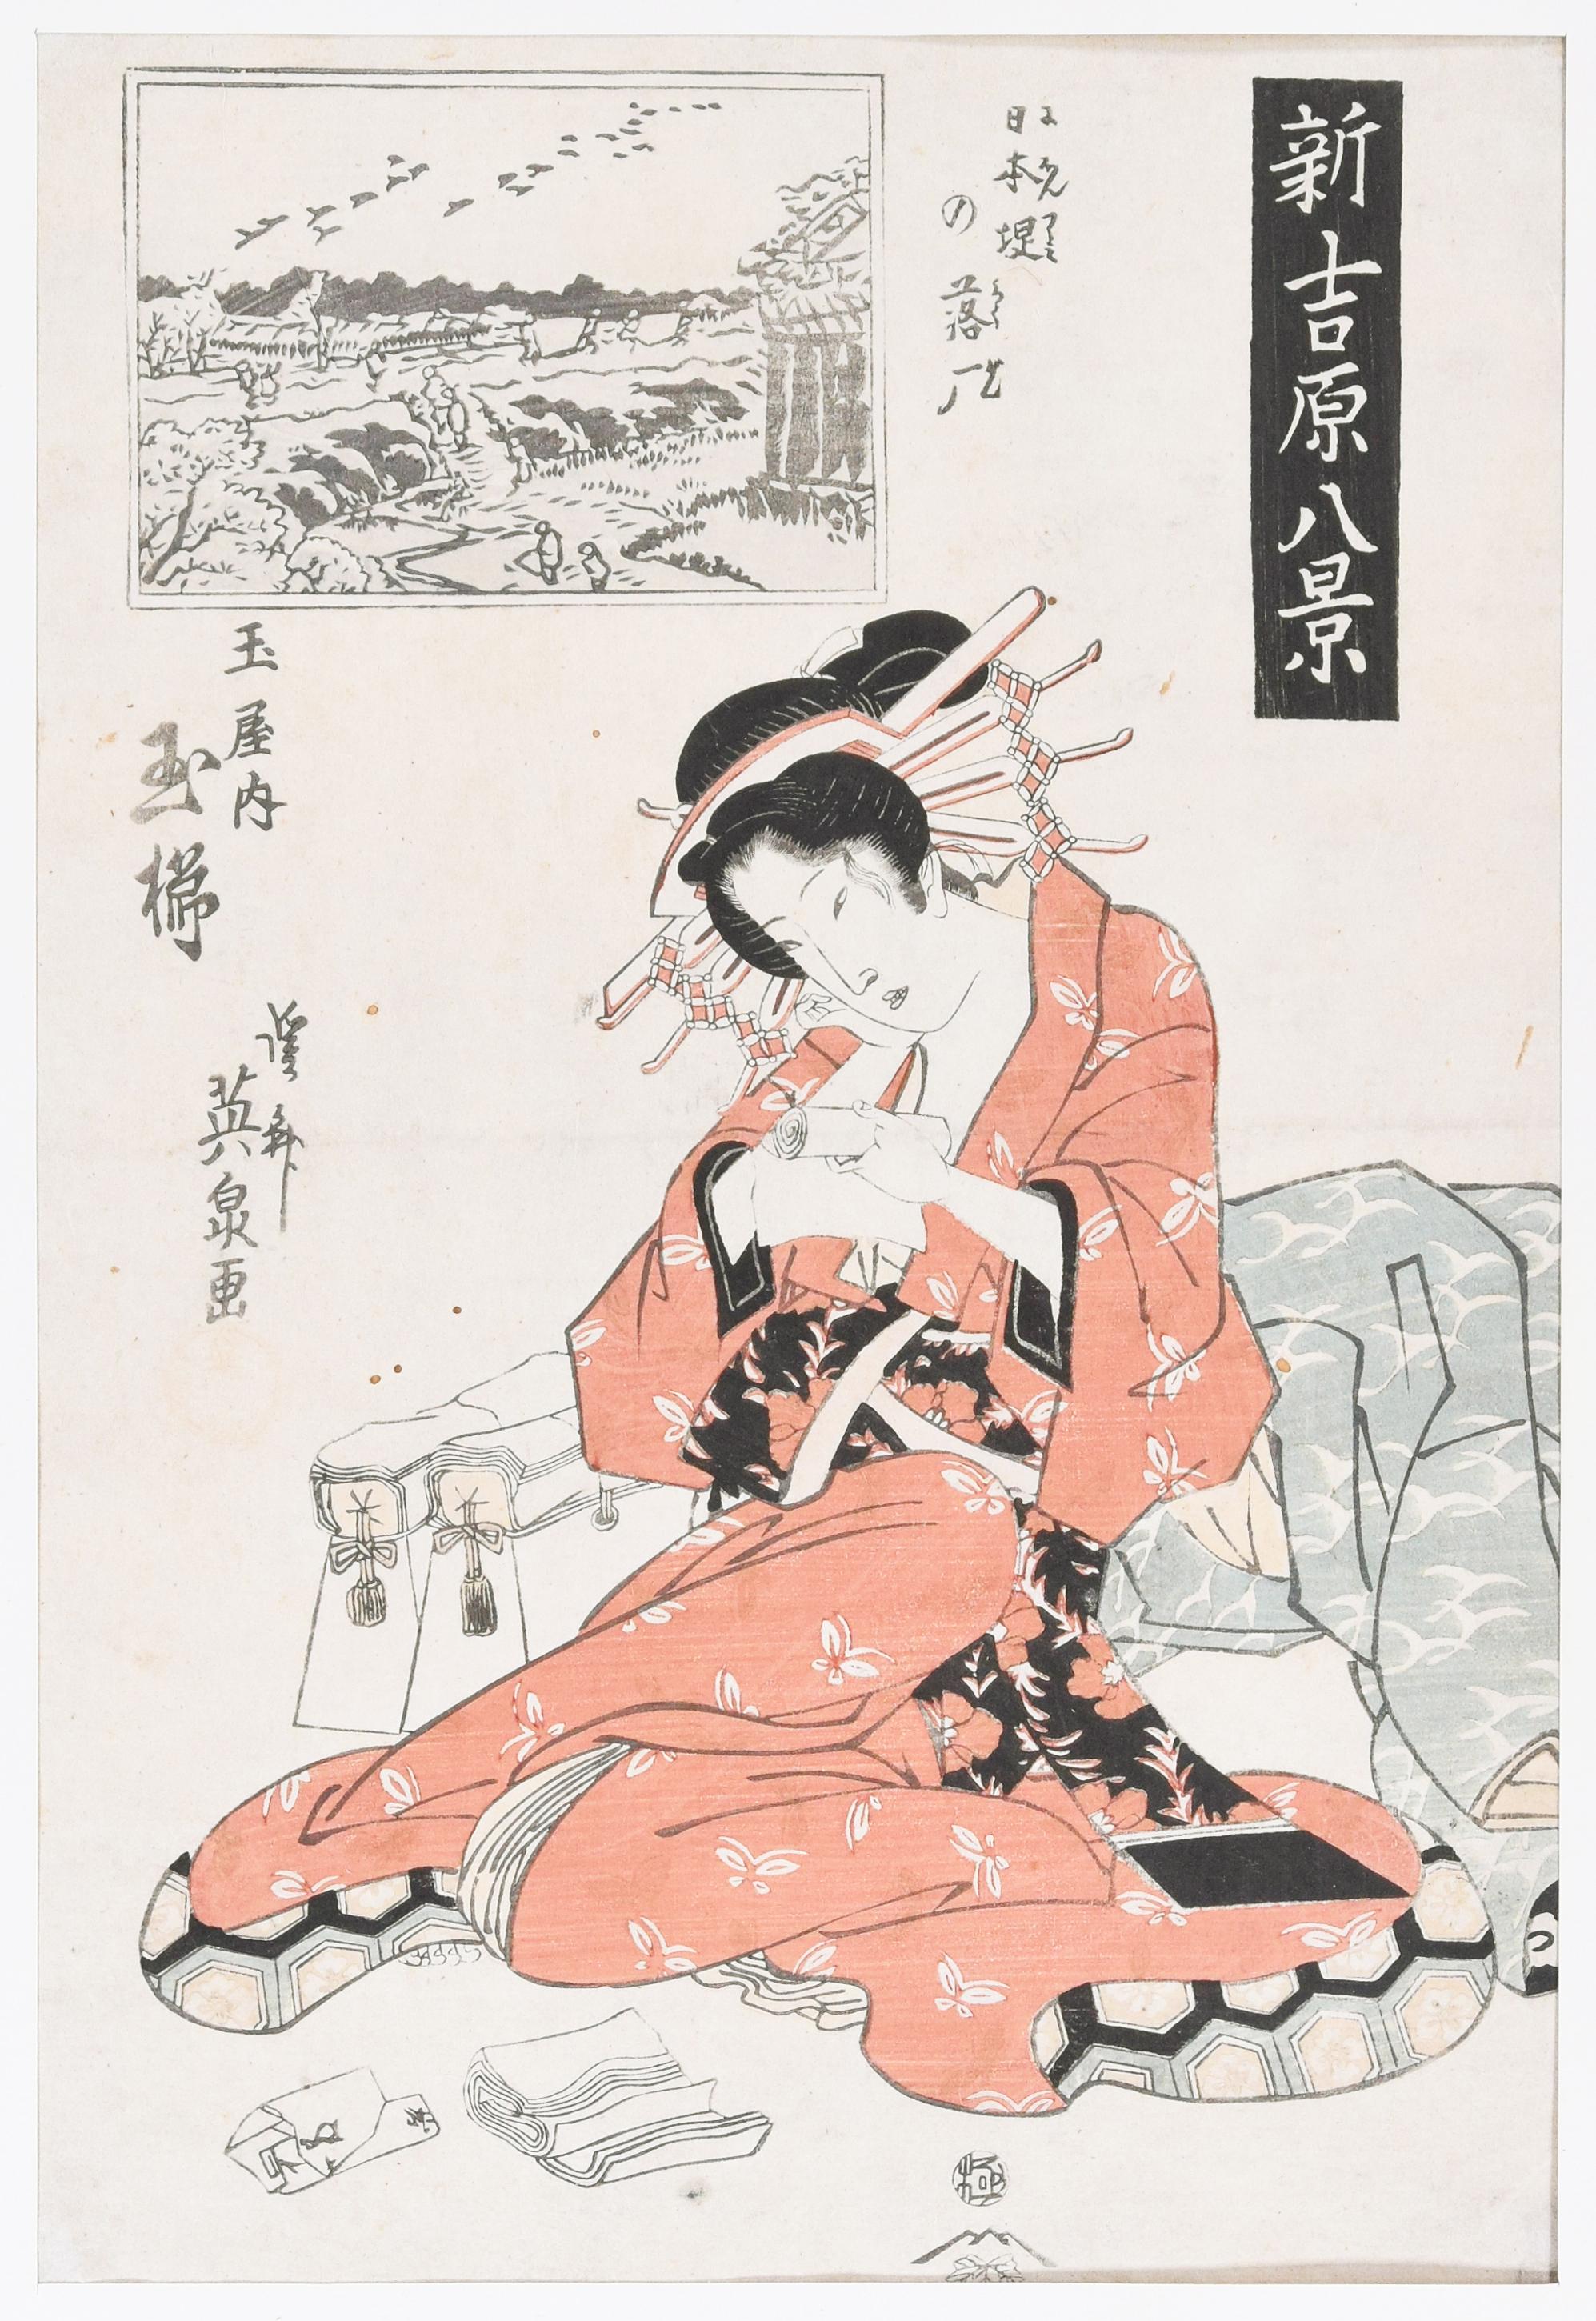 Die Kurtisane ist ein Originaldruck, der zu Beginn des XIX. Jahrhunderts von Keisai Eisen geschaffen wurde

Dies ist eine gemischte farbige Xylographie. Inklusive Passepartout: 49 x 36,5 cm

Guter Zustand bis auf kleine Löcher auf dem